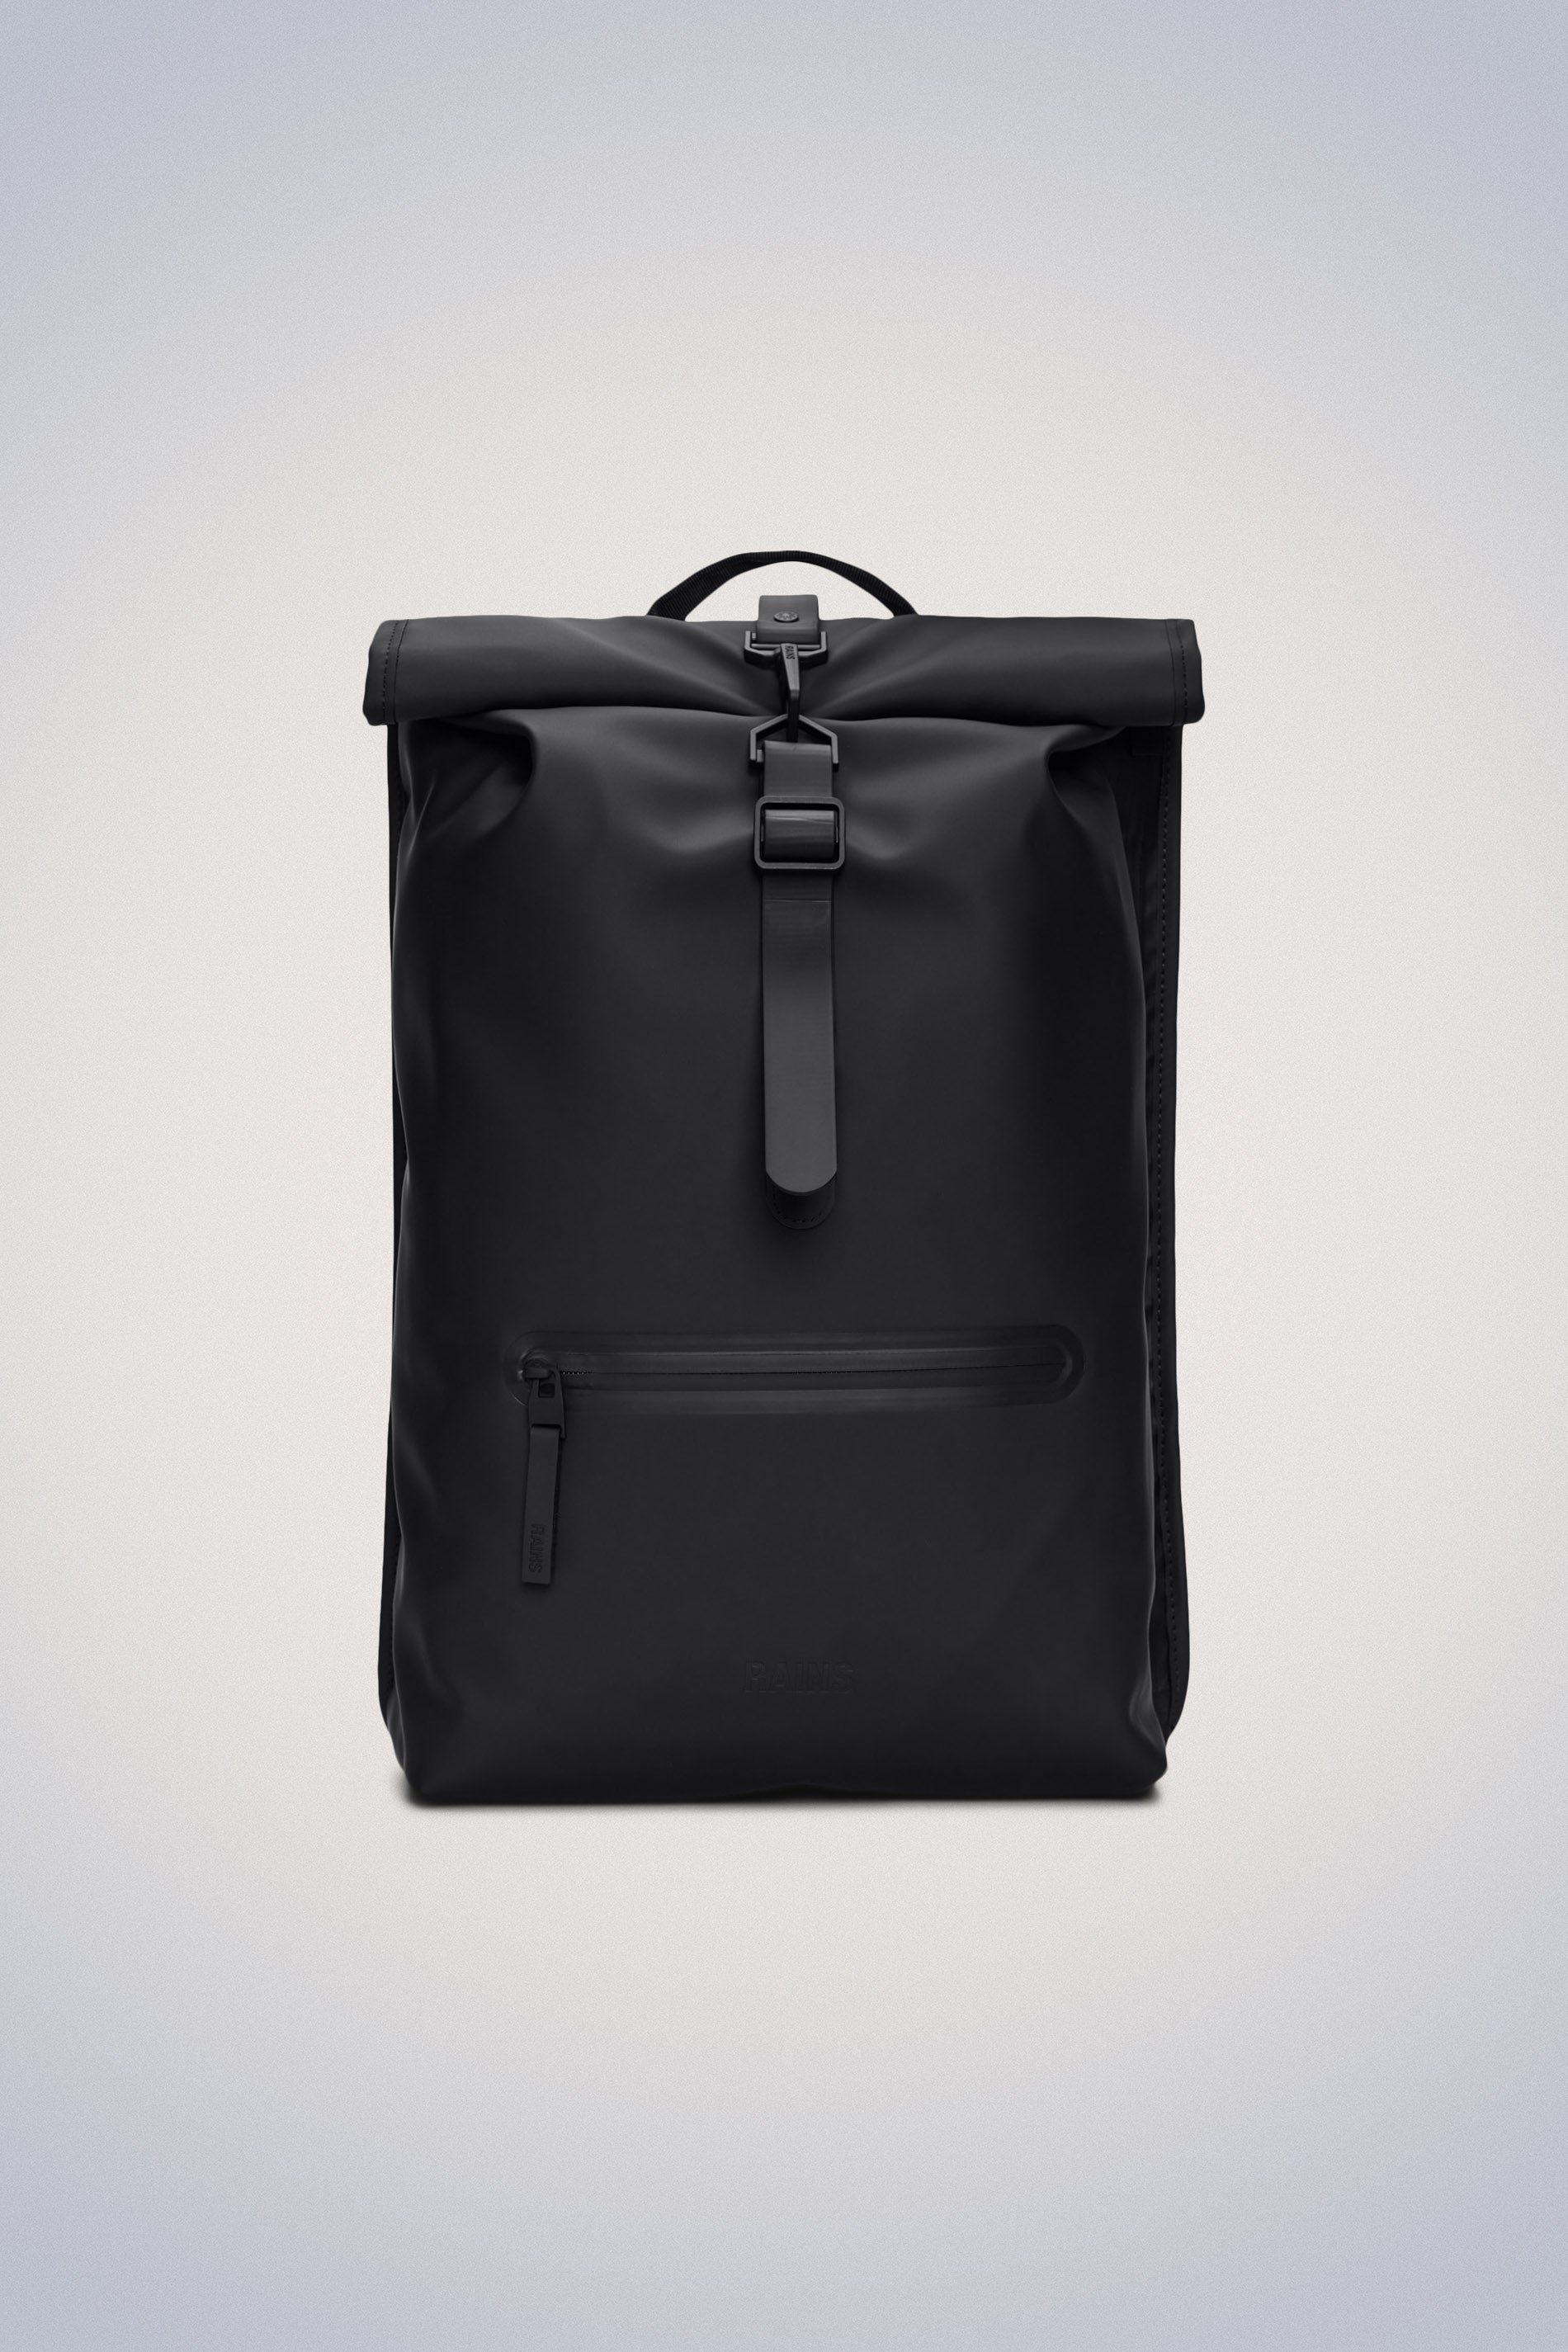 Laptop Backpacks, Durable & Waterproof, Shop Online